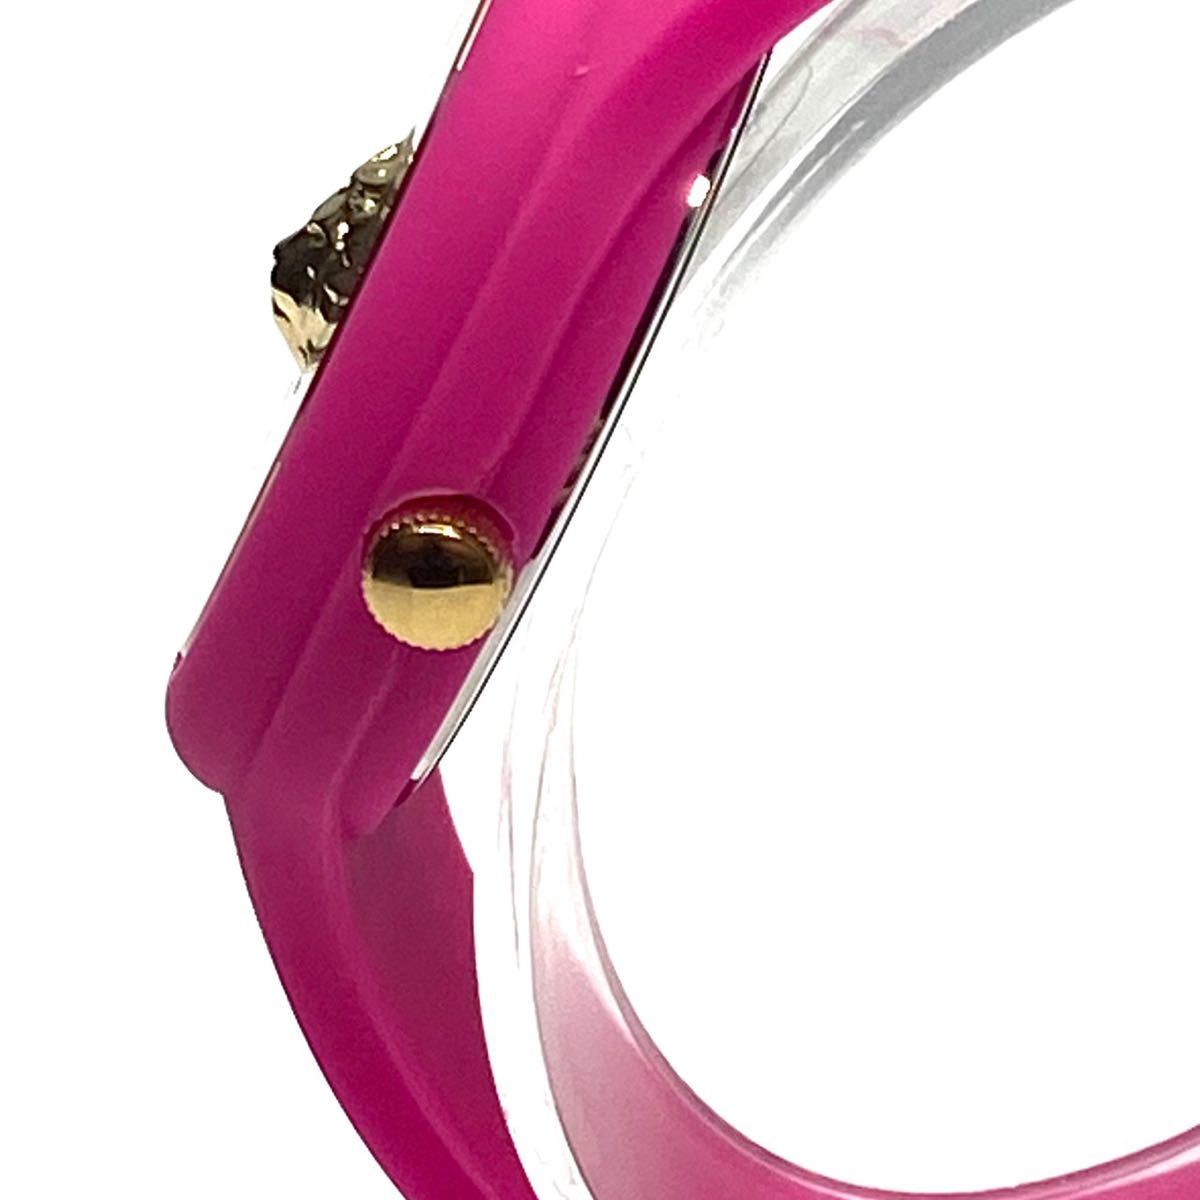 人気商品ランキング ラバー クォーツ 腕時計 レディース Versace